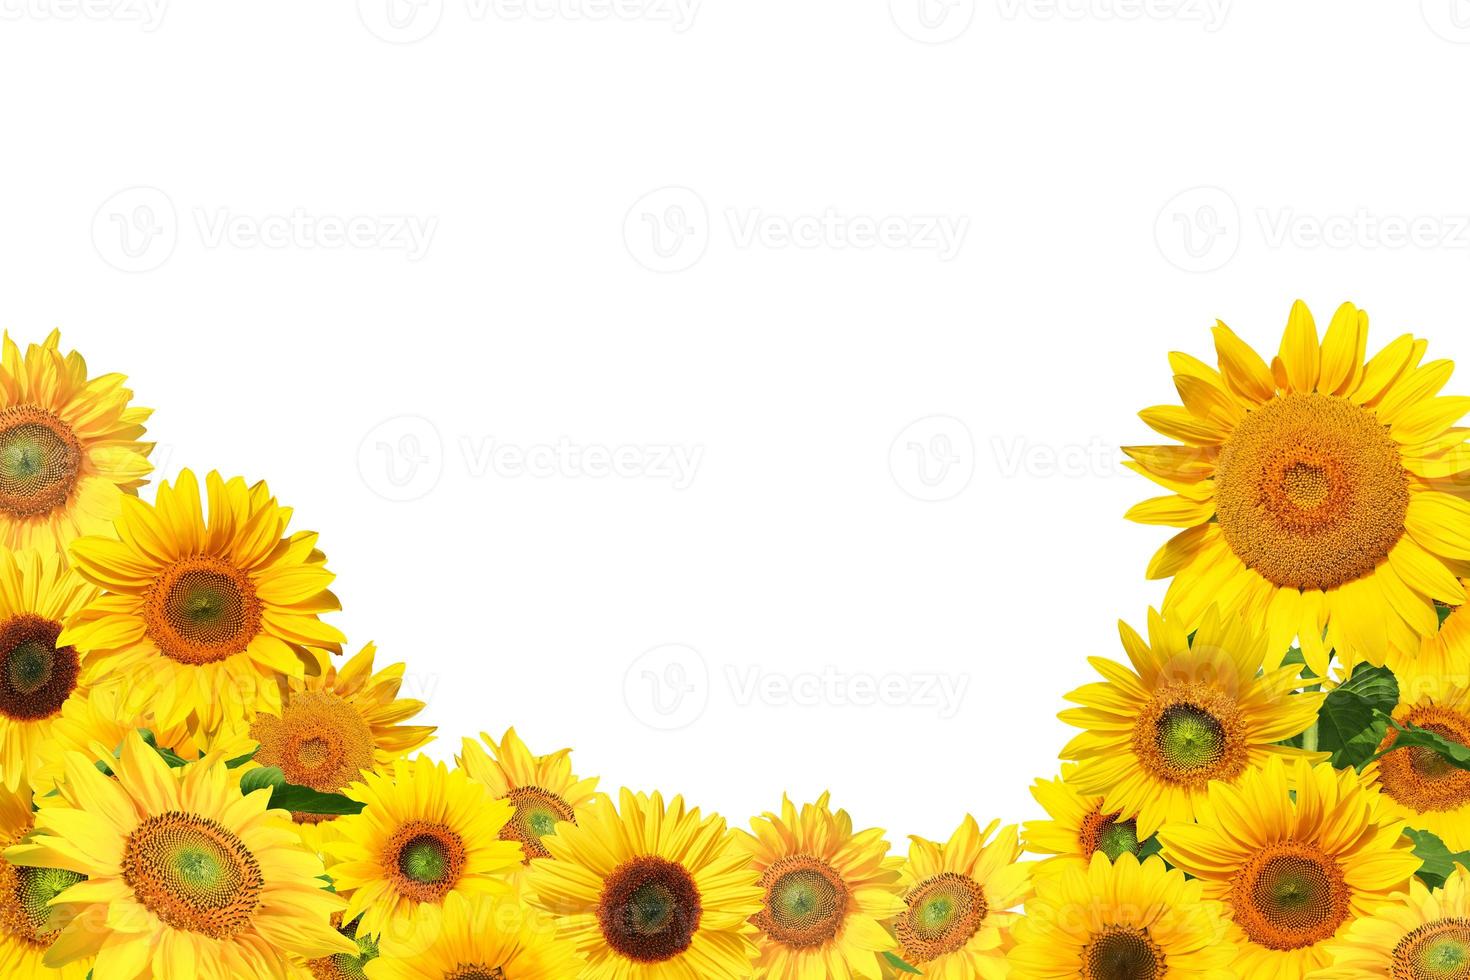 blomma av solros isolerad på vit bakgrund. foto